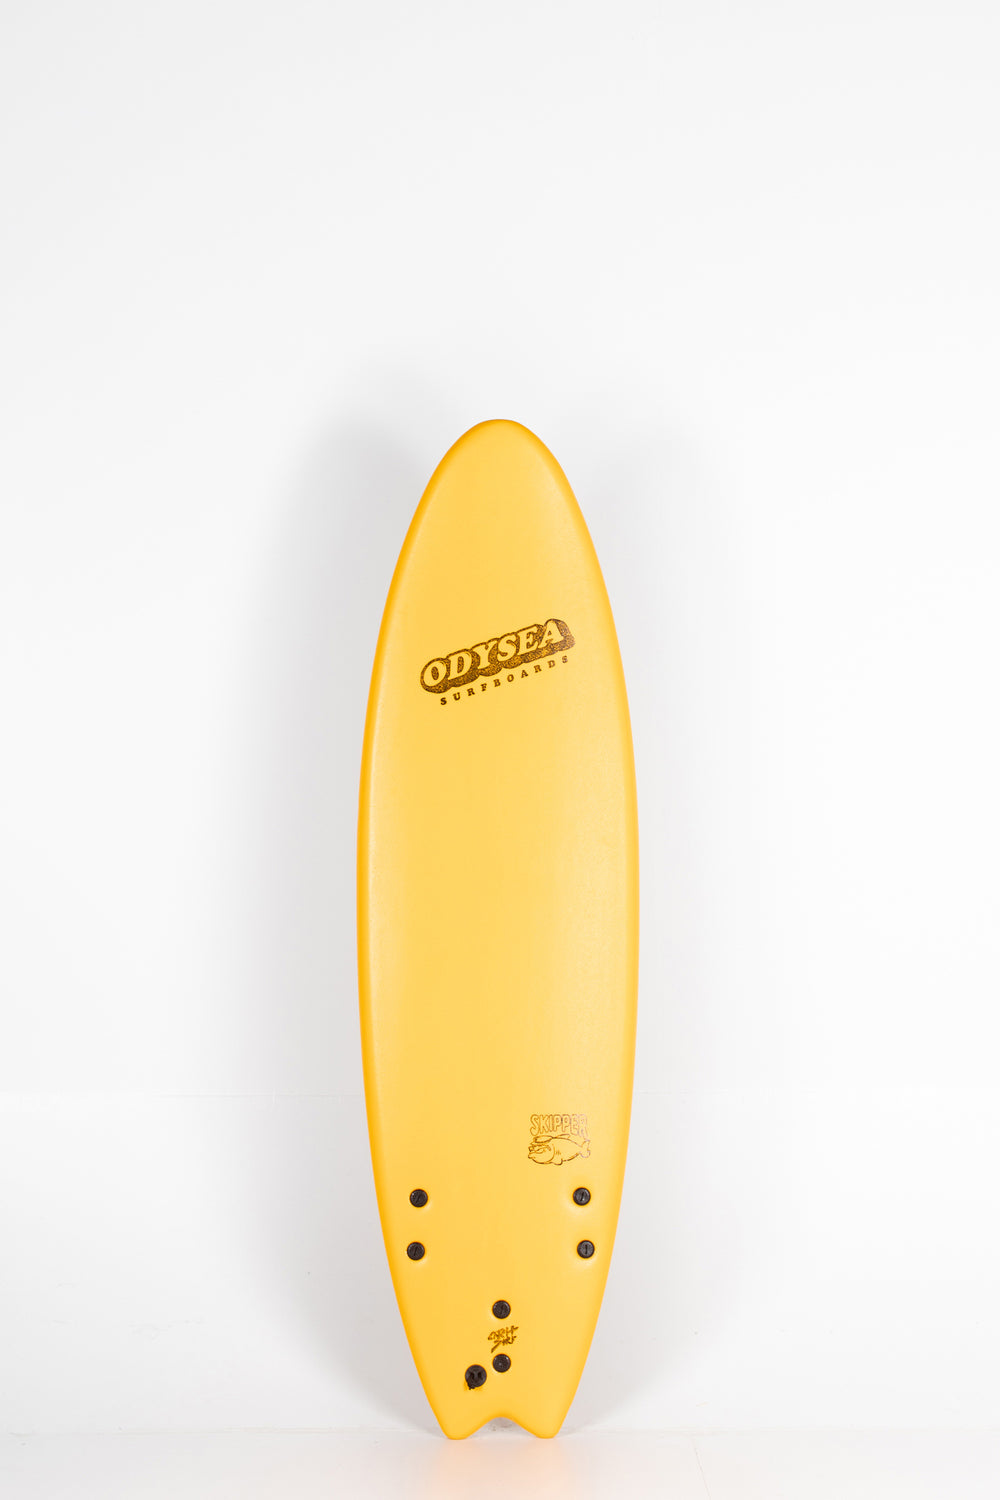 Pukas Surf Shop - atch Surf - SKIPPER THRUSTER x TAJ BURROW PRO - 6'6